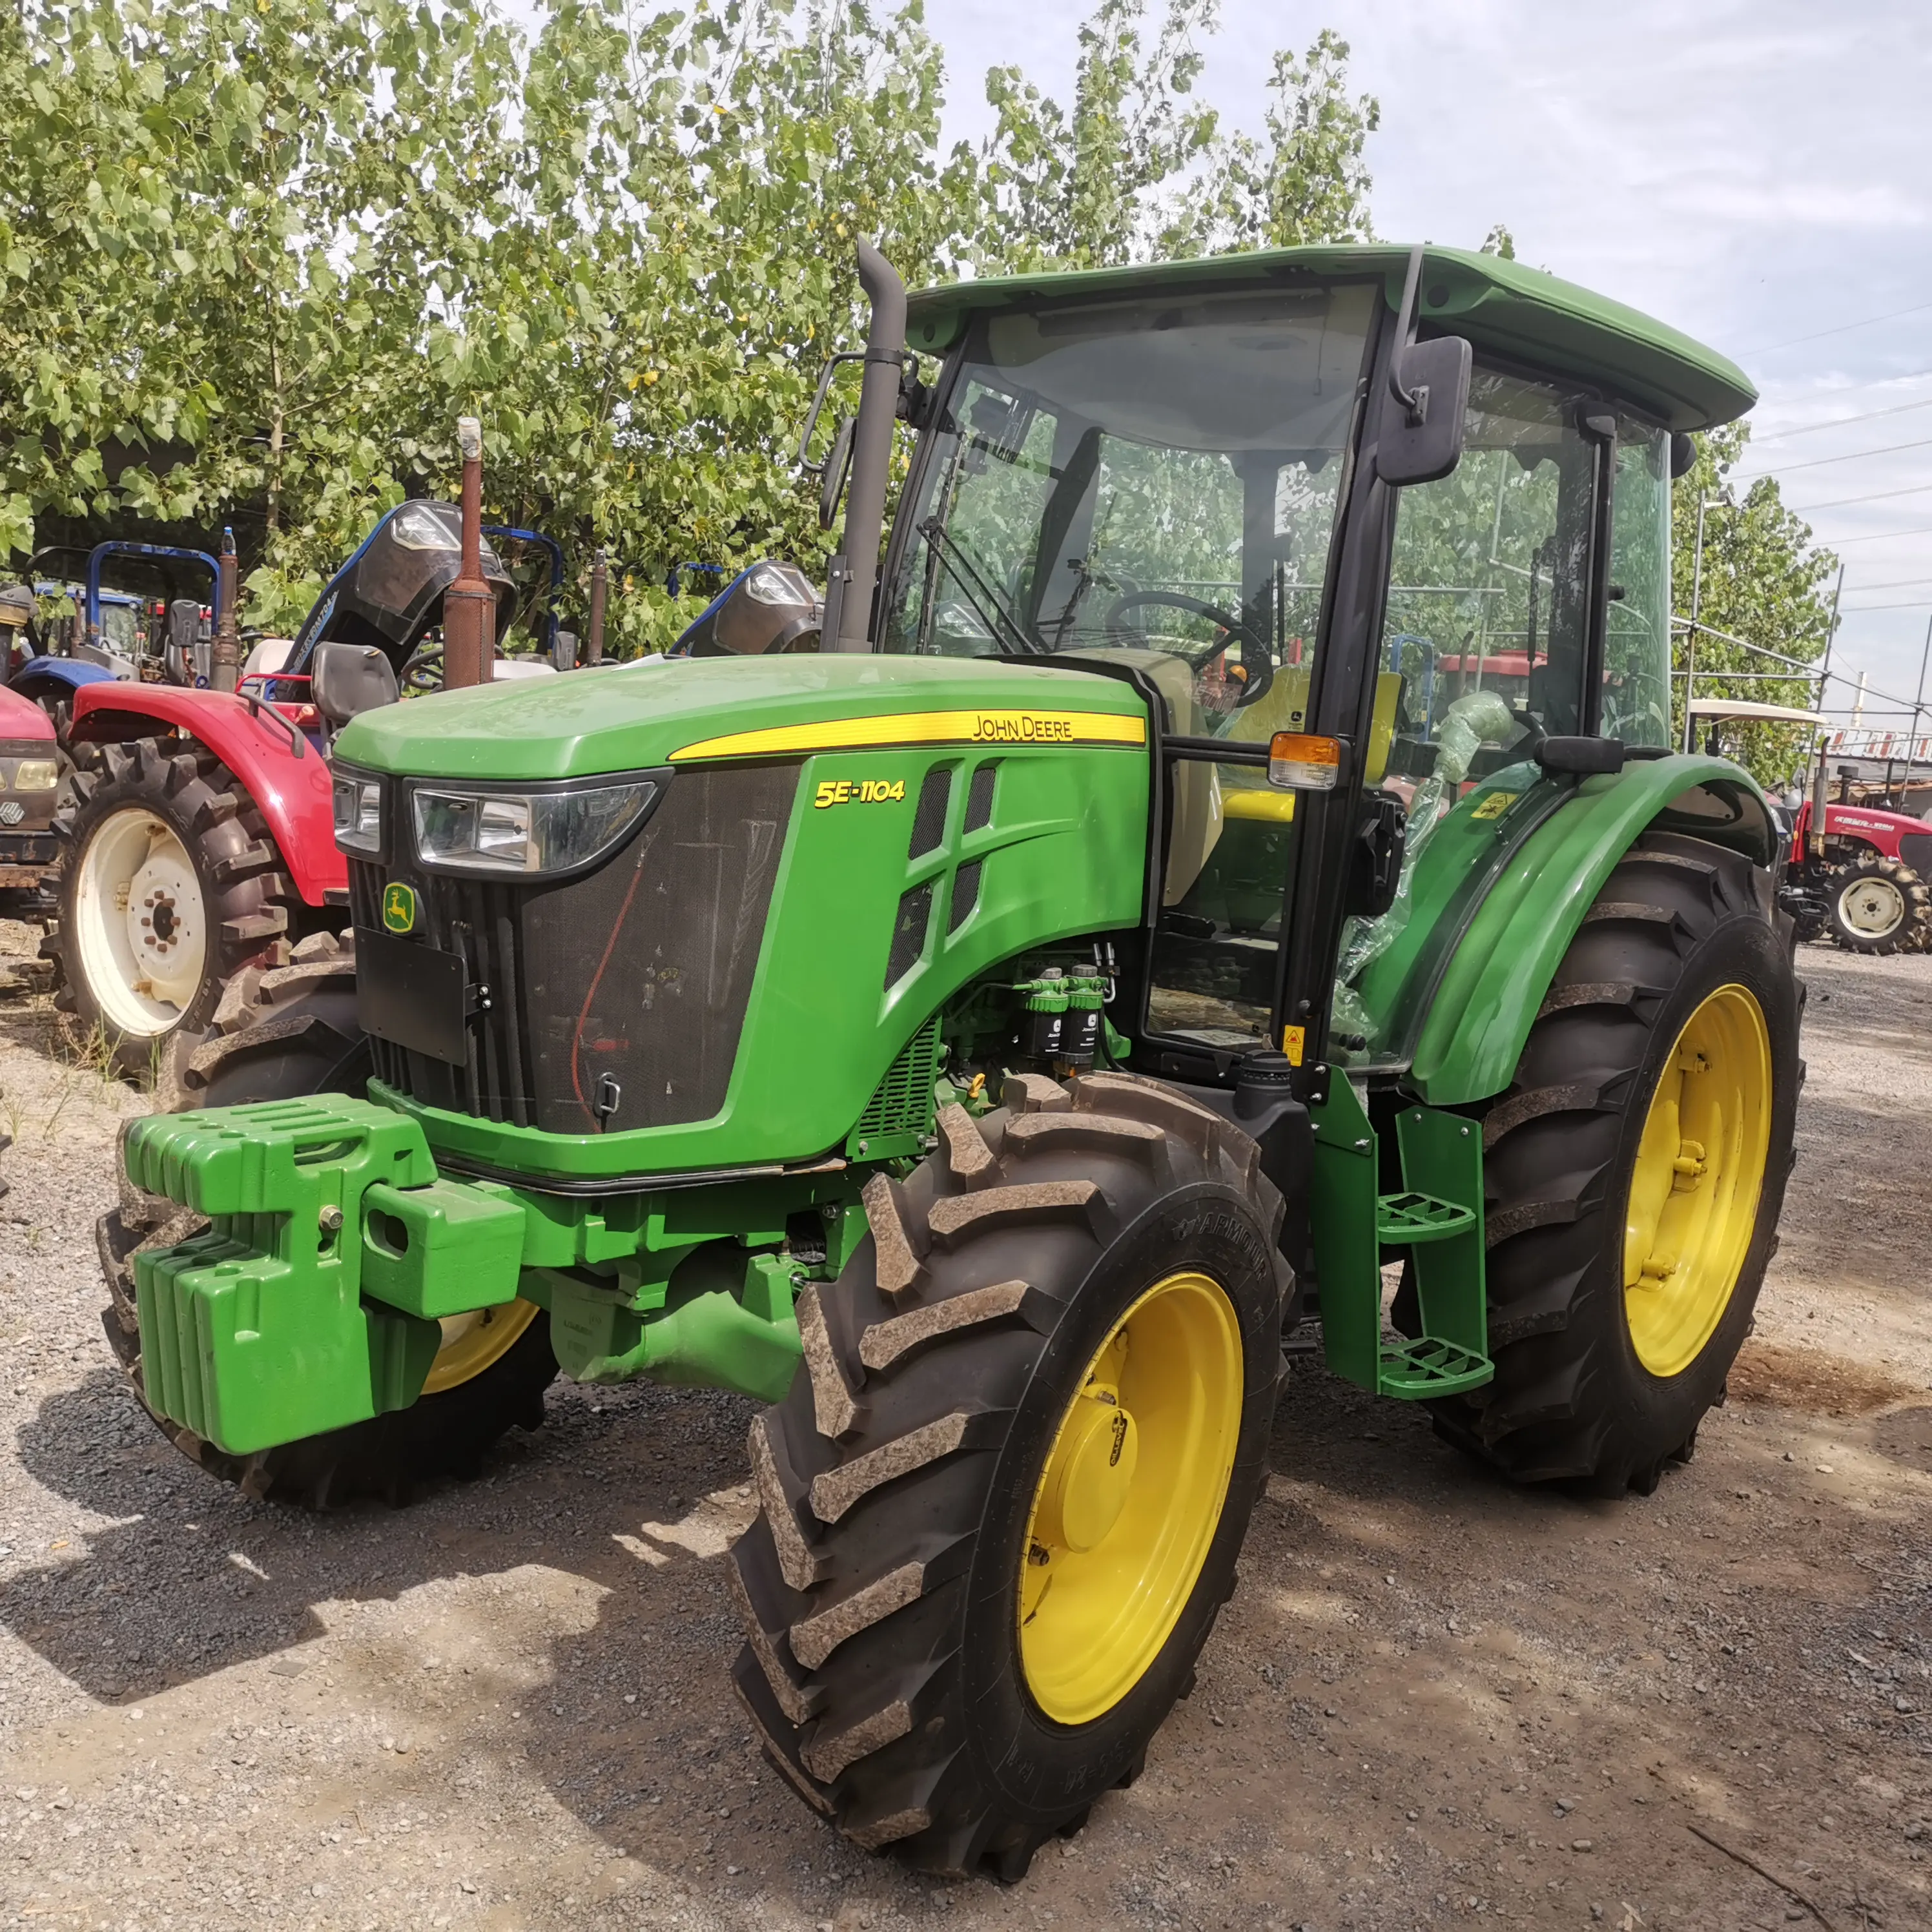 Comprar tractores al por mayor para la Agricultura usado John Deer 4x4/tractores para la Agricultura usado rueda Tractor 110HP Tractor